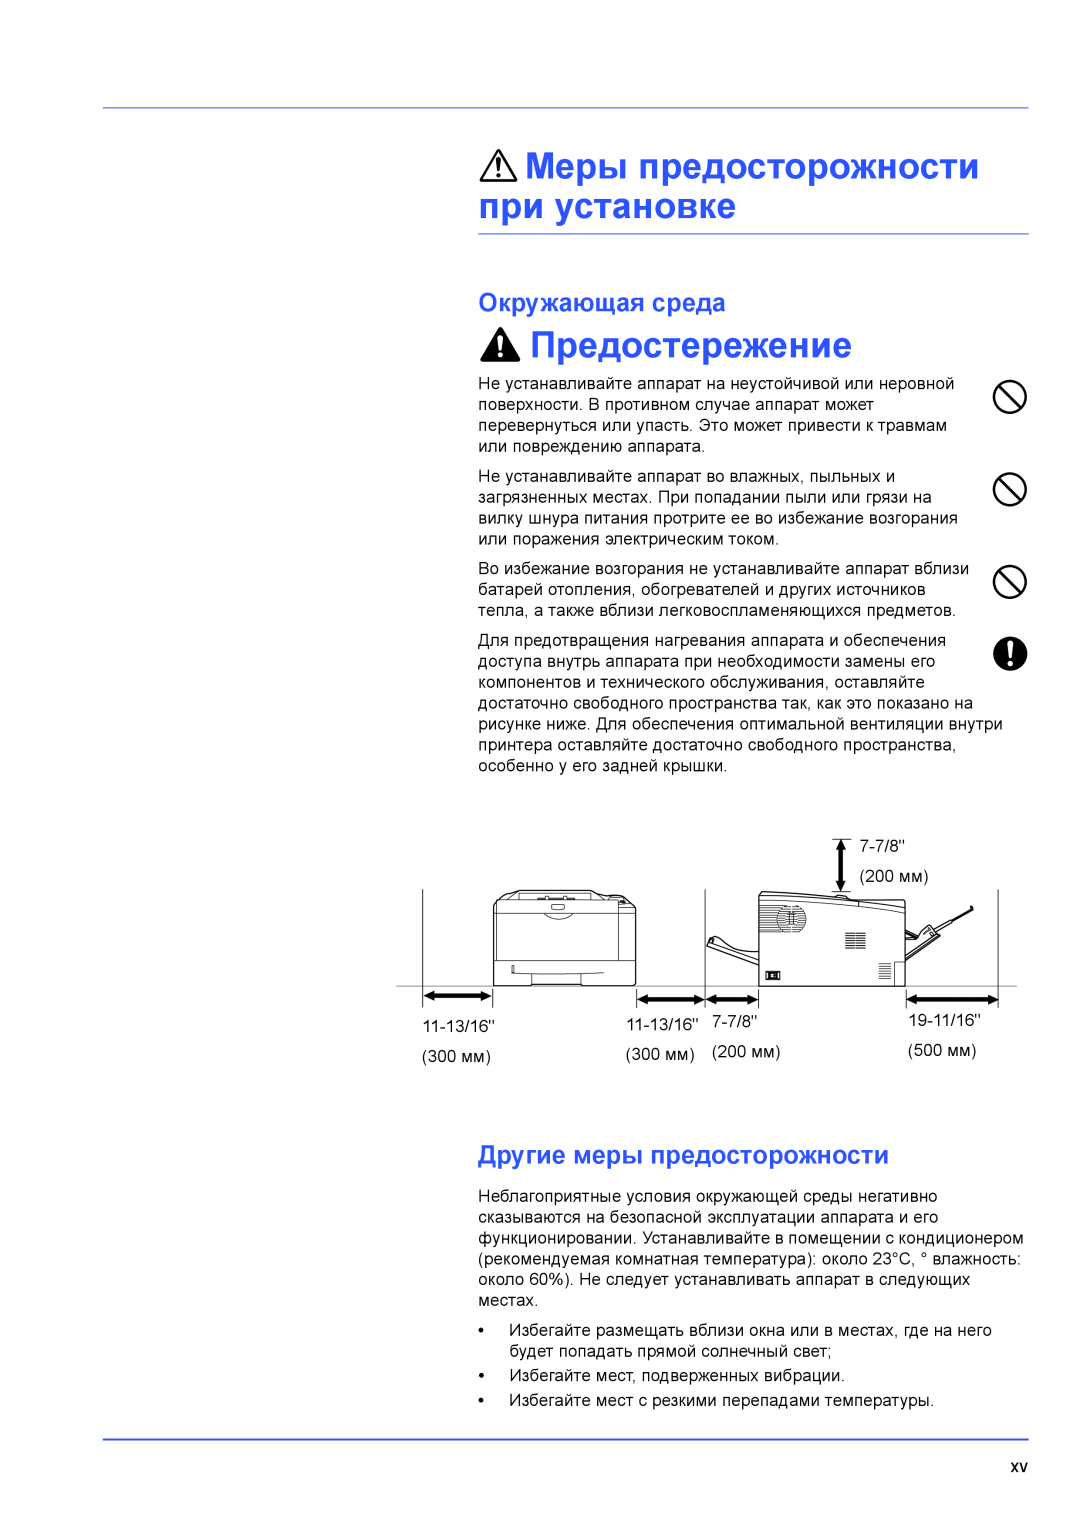 Kyocera FS-1100 manual Предостережение, Меры предосторожности при установке, Окружающая среда, Другие меры предосторожности 